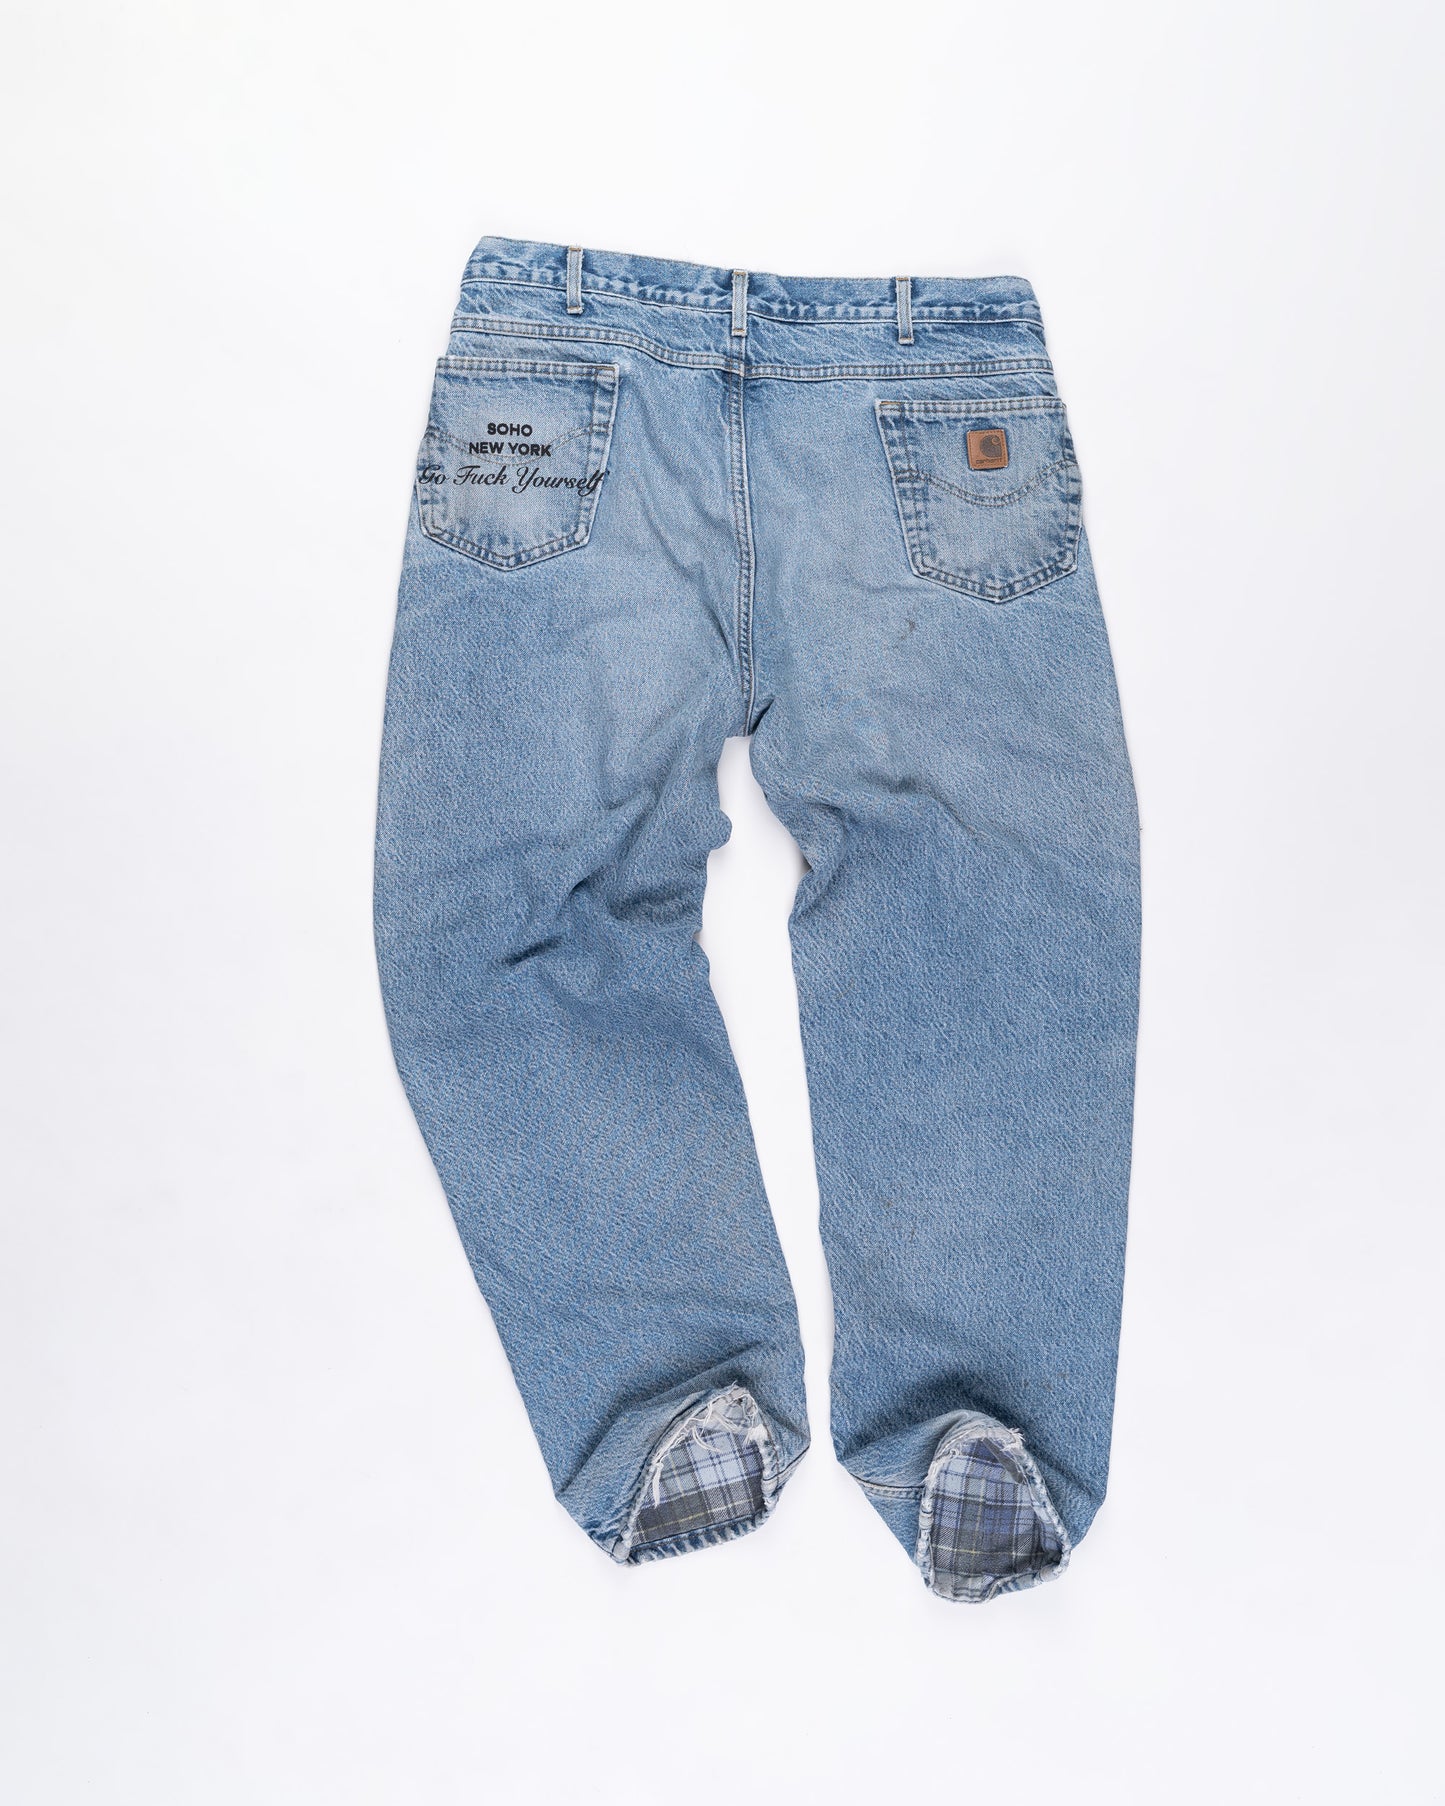 Blue Denim Carhart Pants Size: 42